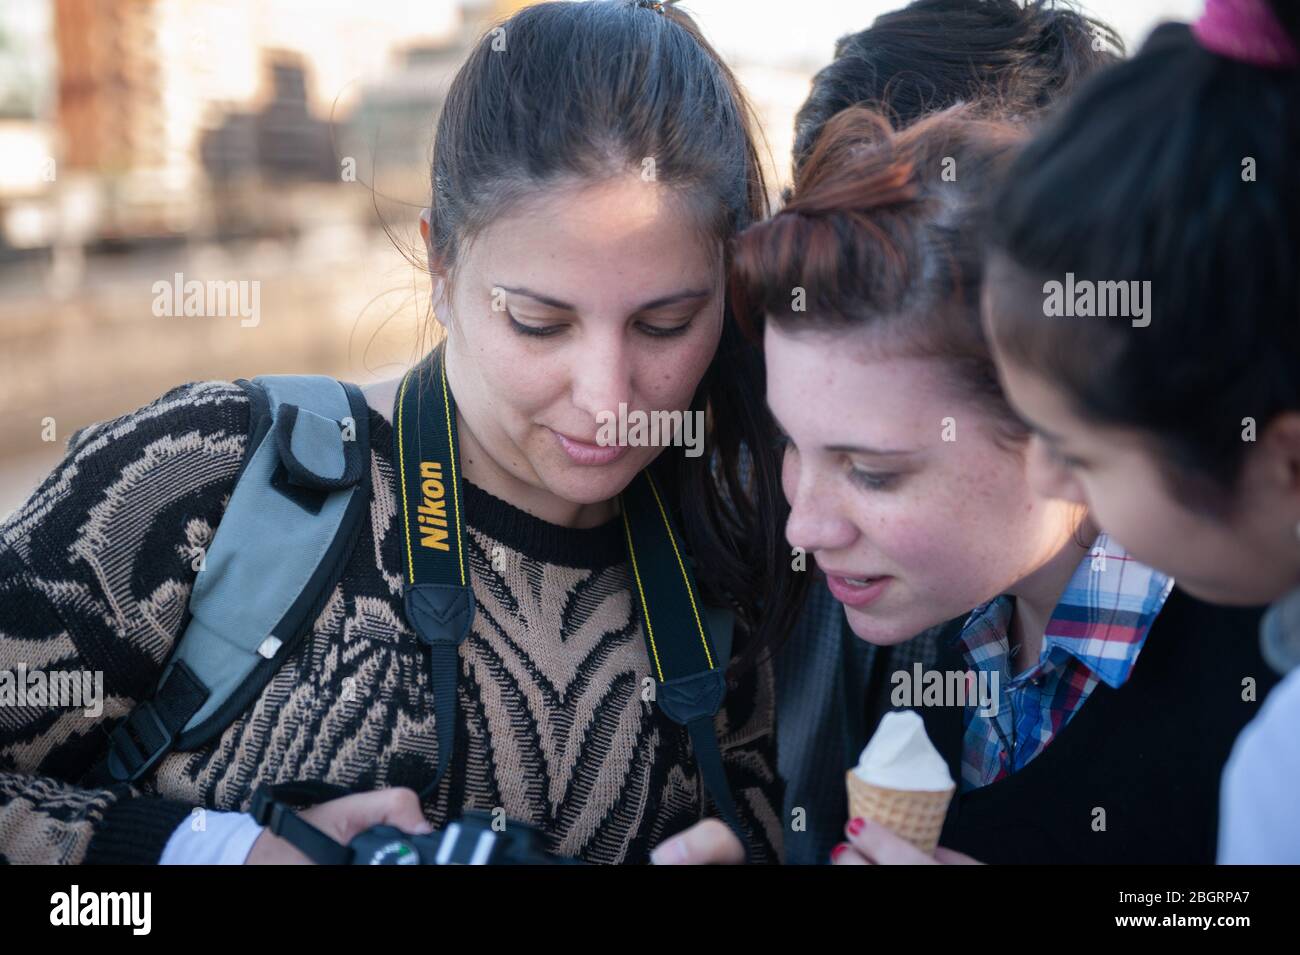 Buenos Aires, Argentinien - September 09 2014: Gruppe A junge Frauen, die die Bilder auf dem Kamerabild betrachten und überprüfen Stockfoto